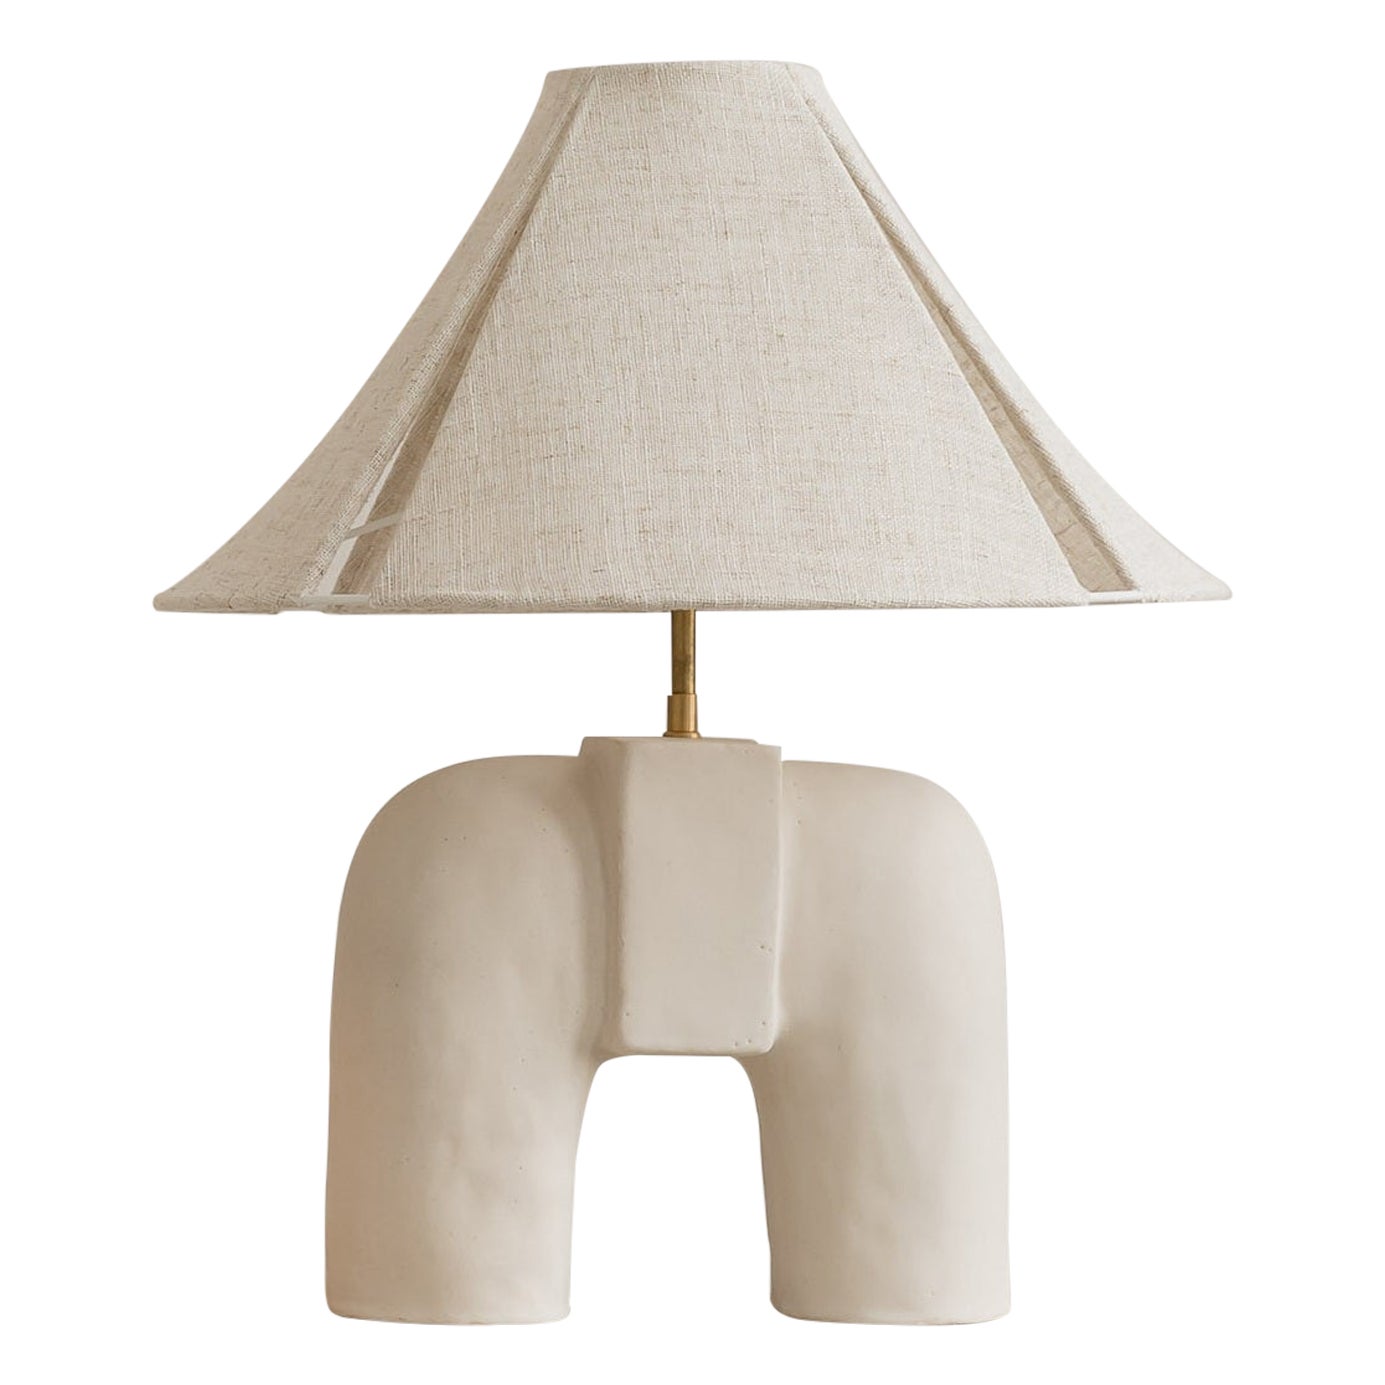 Audrey Table Lamp by Cuit Studio